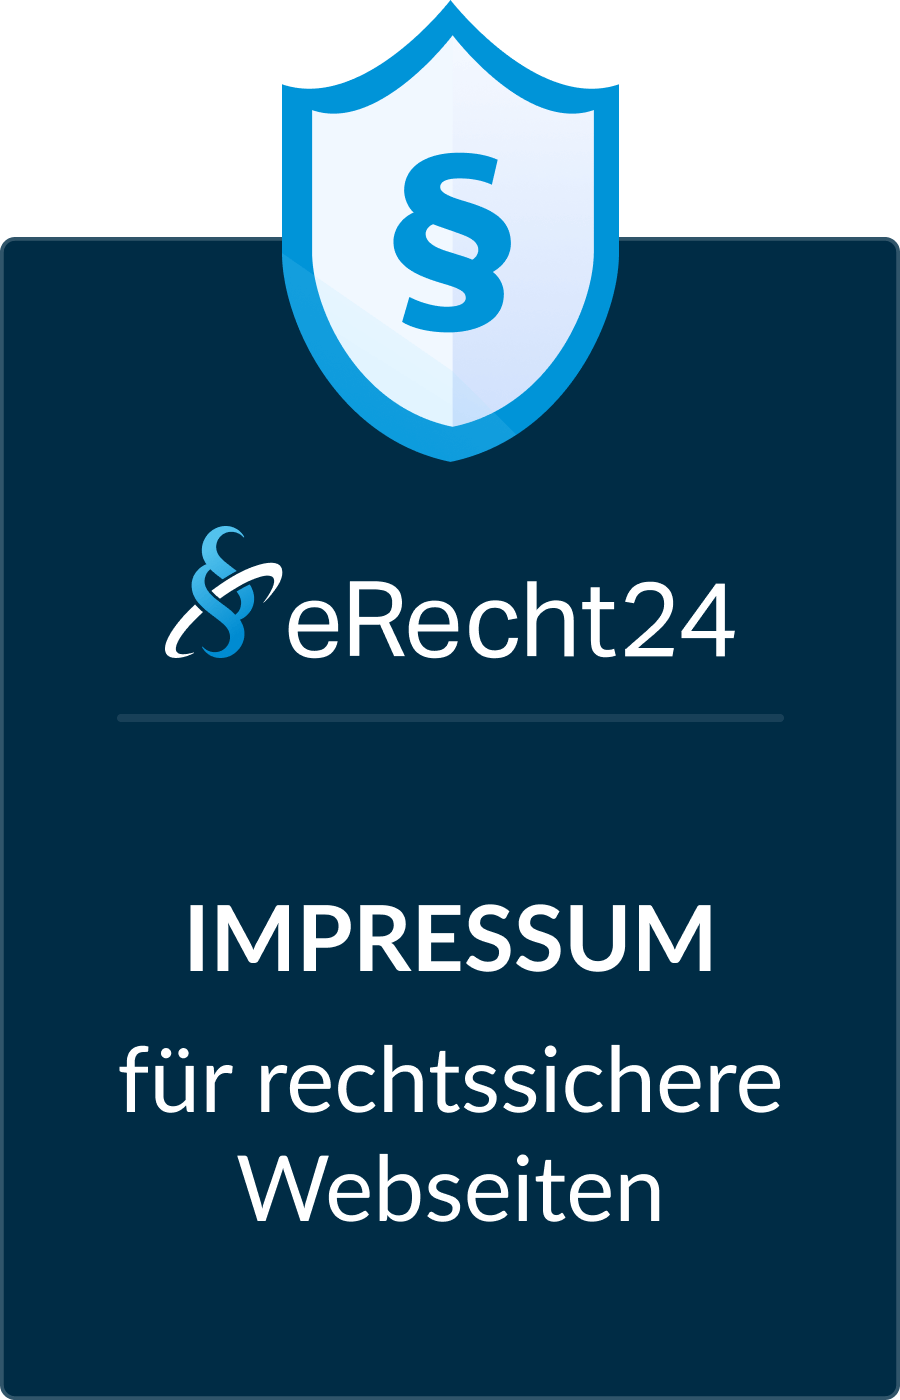 eRecht 24 Siegel für ein Impressum für rechtssichere Webseiten